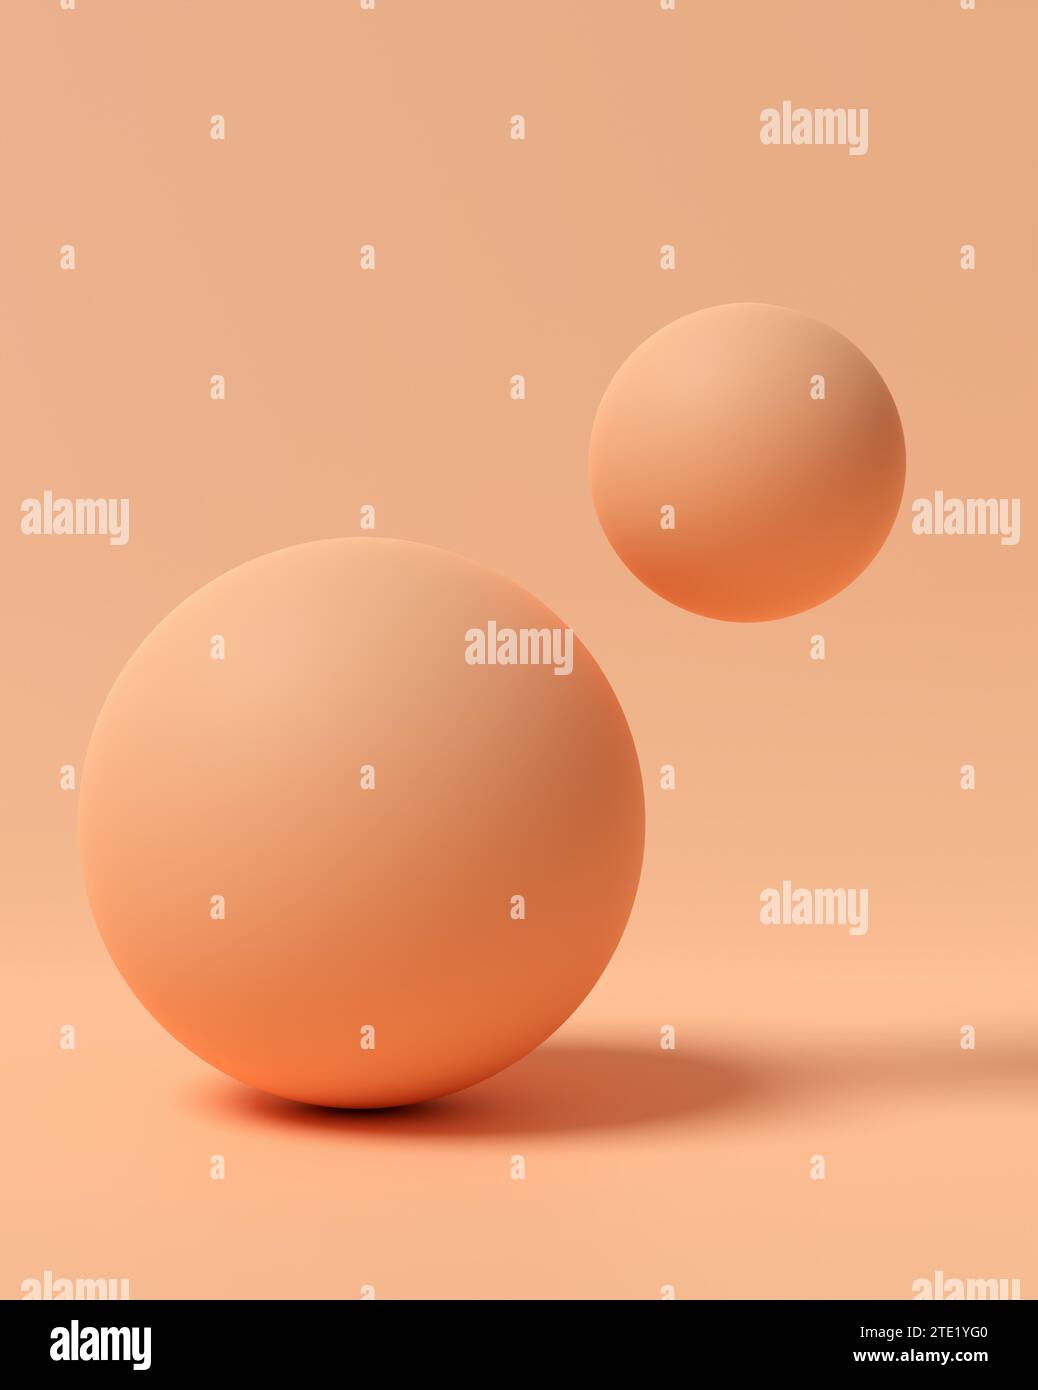 Palline o bolle colorate di pesco fuzz su sfondo pastello luminoso. Rendering 3D delle forme geometriche astratte. Foto Stock